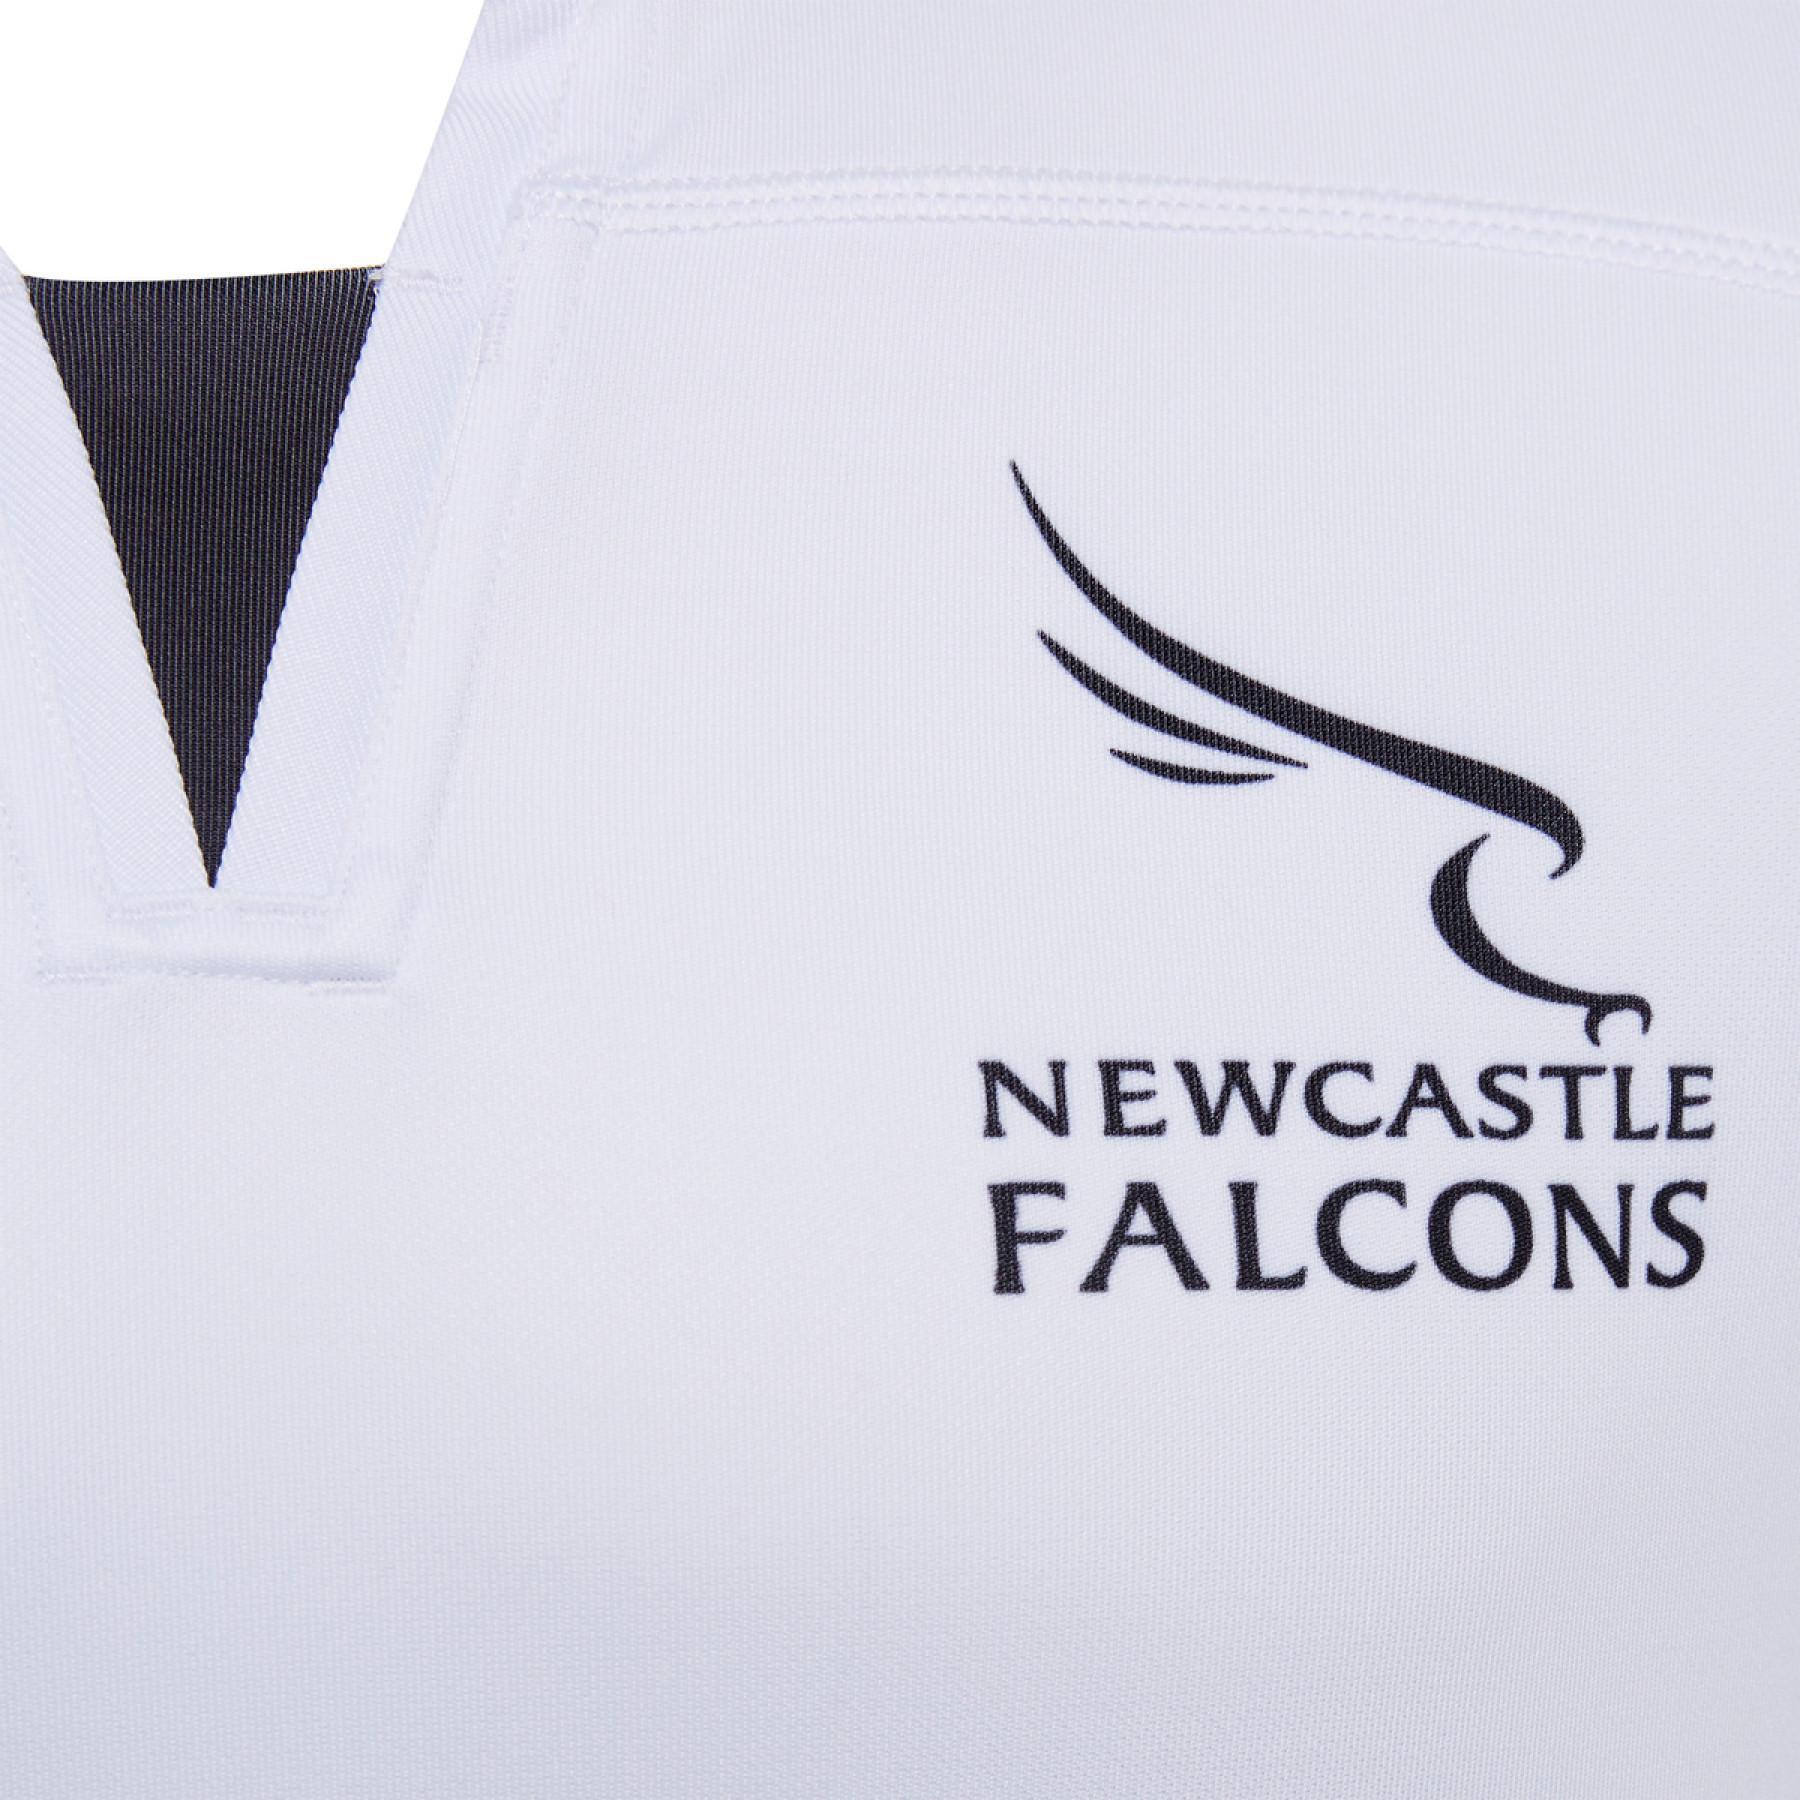 Camiseta segunda equipación Newcastle falcons 2020/21